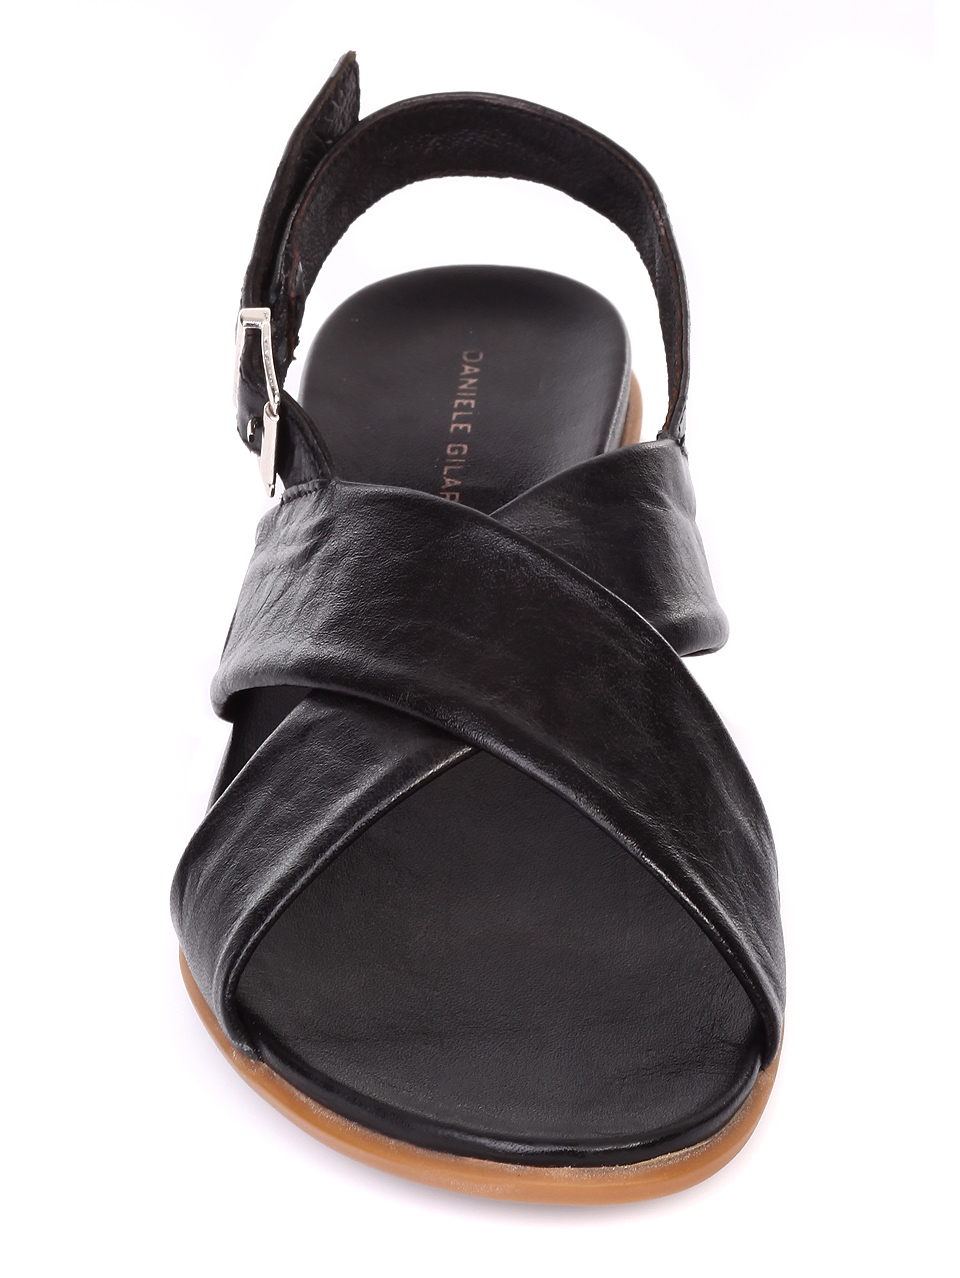 Ежедневни дамски сандали от естествена кожа 4AB-19481 black